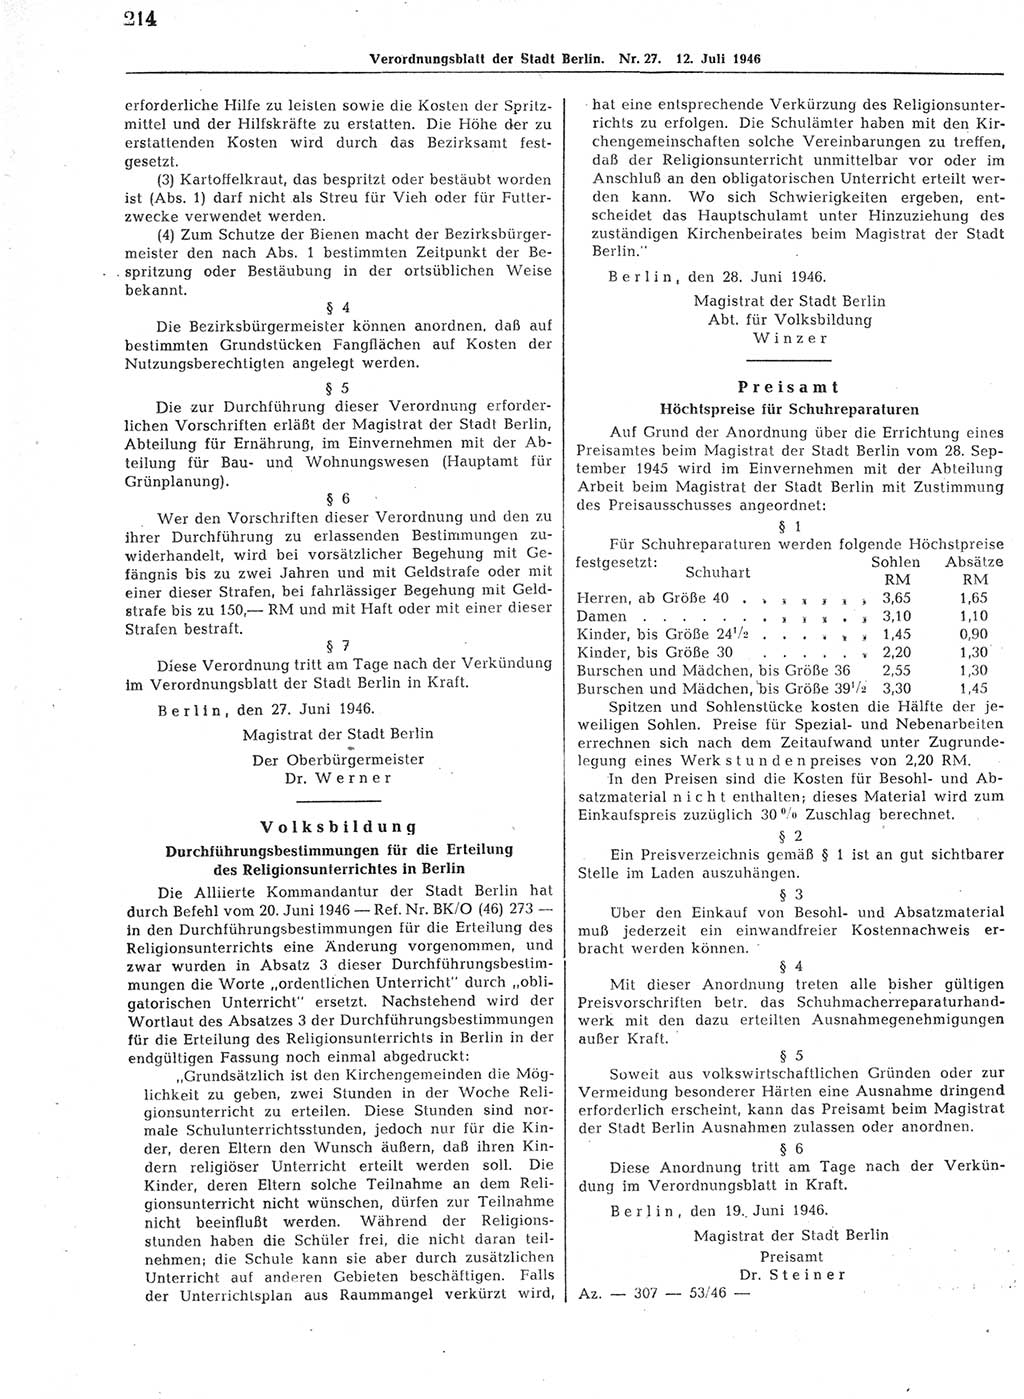 Verordnungsblatt (VOBl.) der Stadt Berlin, für Groß-Berlin 1946, Seite 214 (VOBl. Bln. 1946, S. 214)